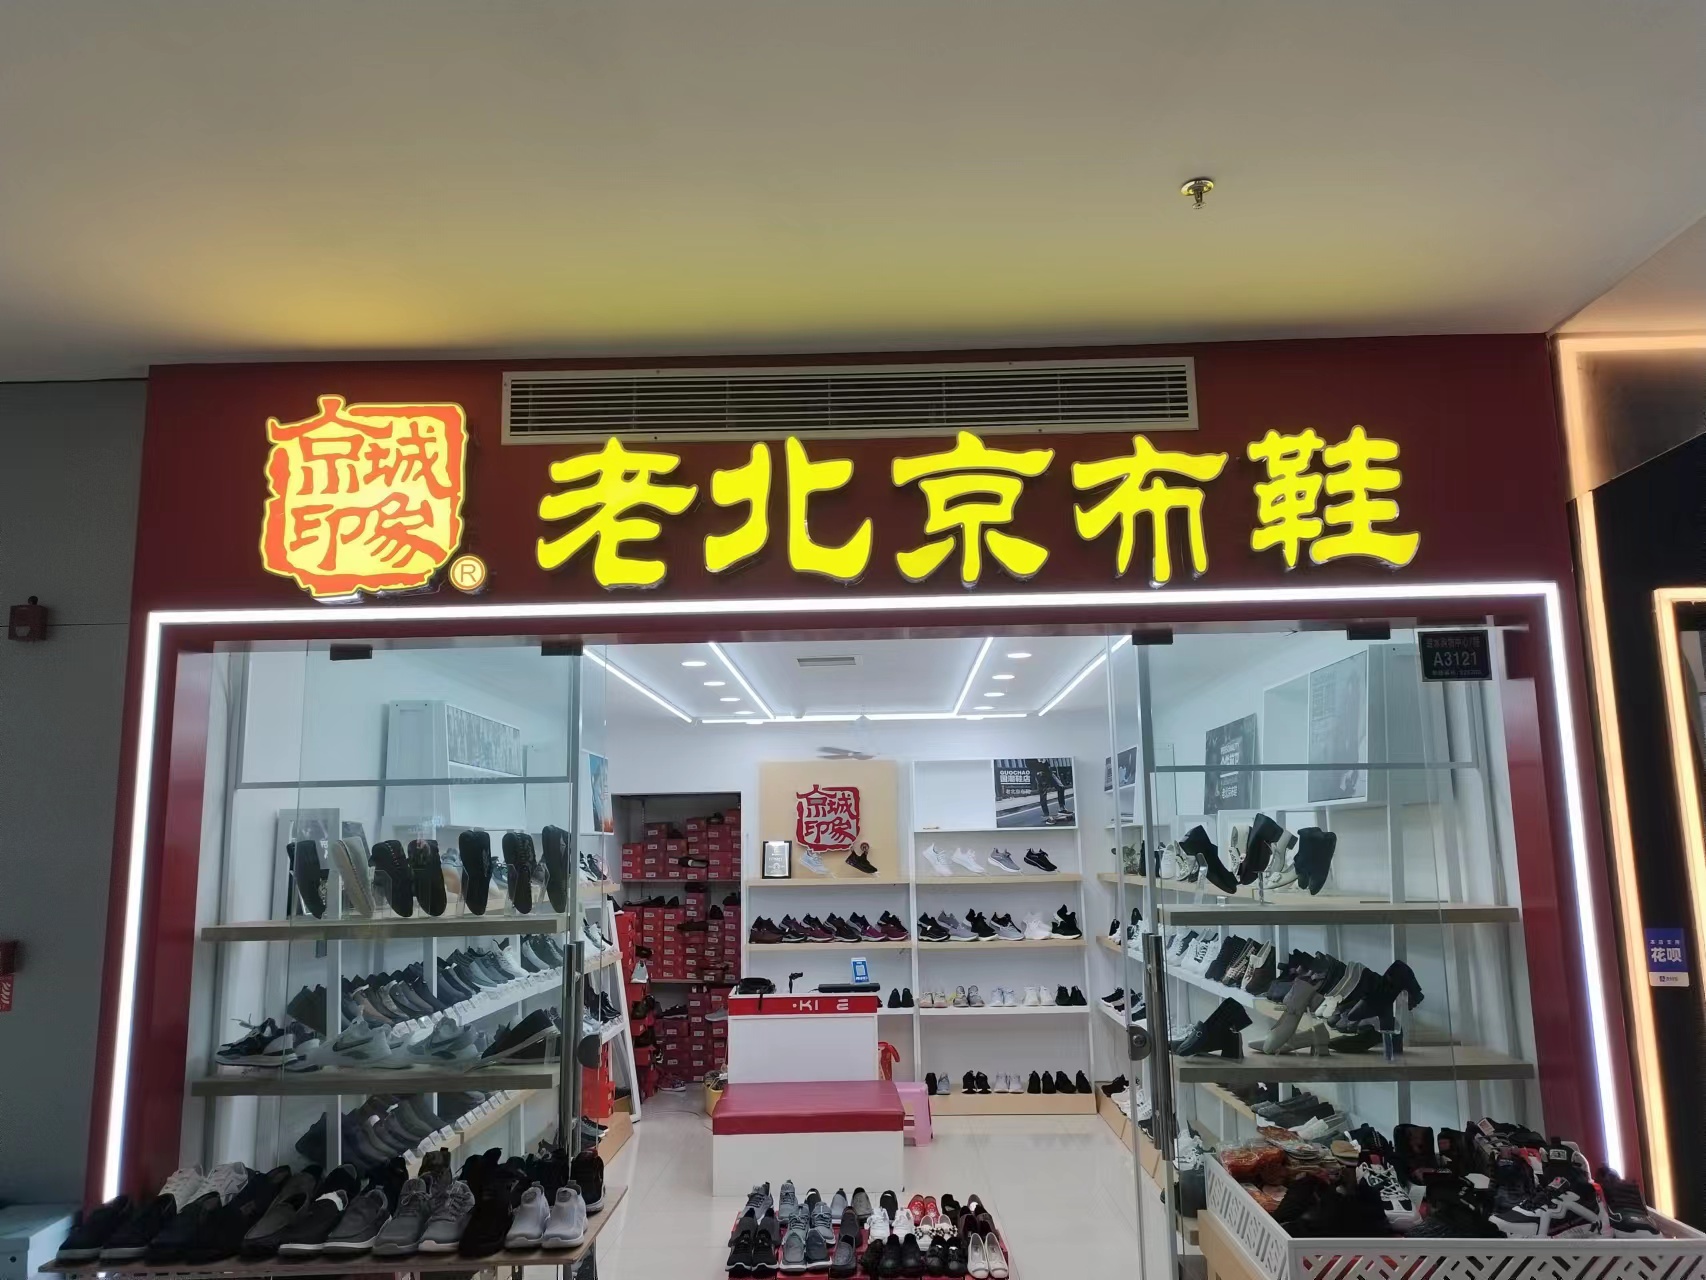 贺：京城印象老北京布鞋加盟店江苏兴化曹老板盛大开业！